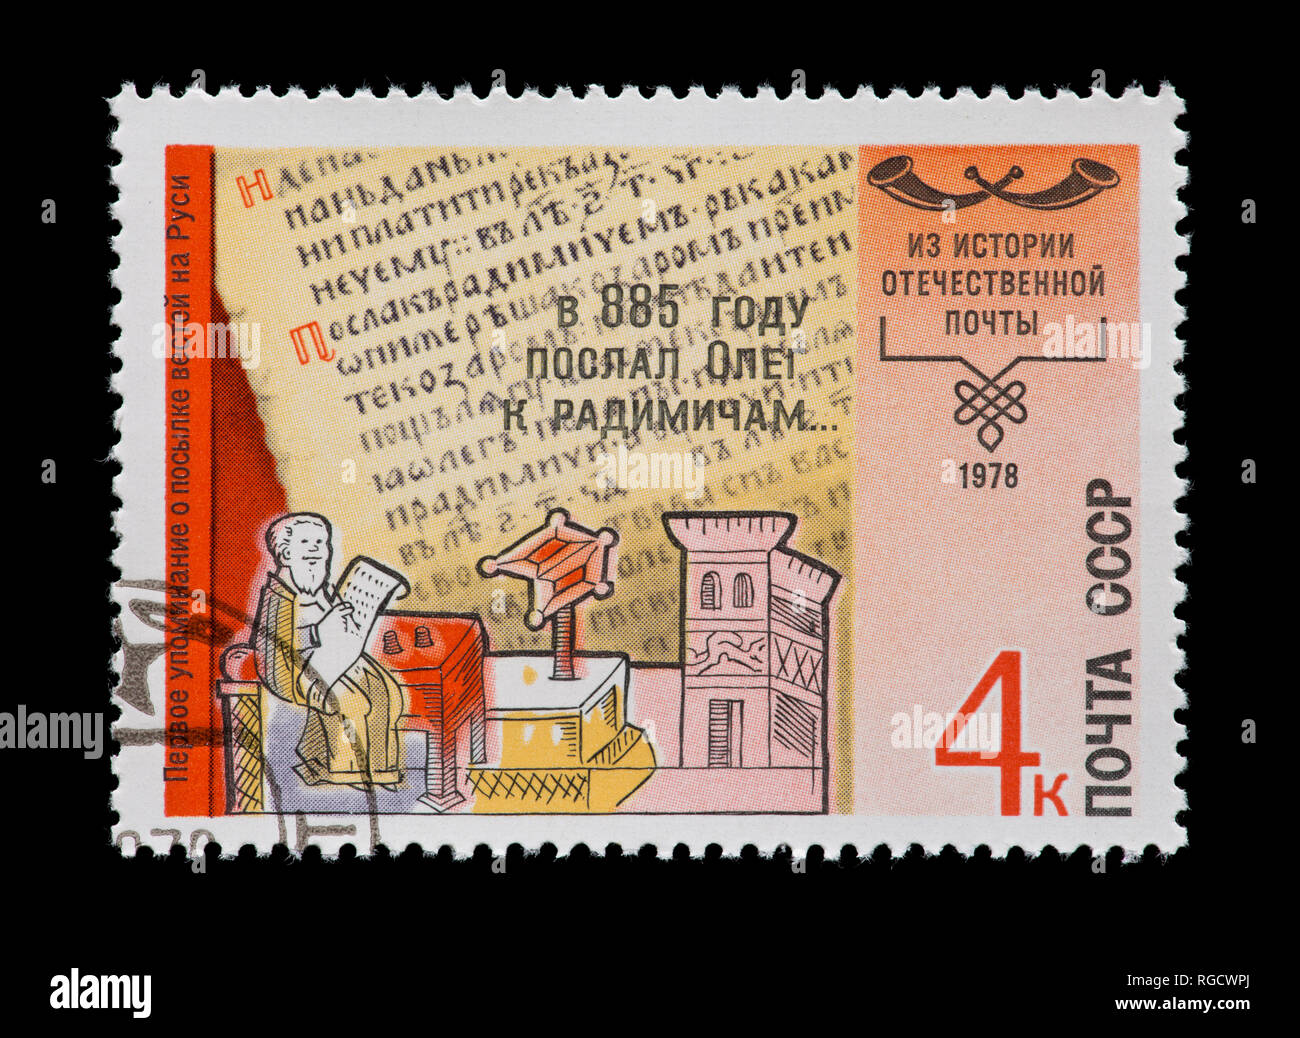 Francobollo dall'Unione Sovietica raffiguranti Nestor Pechersky, cronista da circa 885, la storia del sistema postale Foto Stock